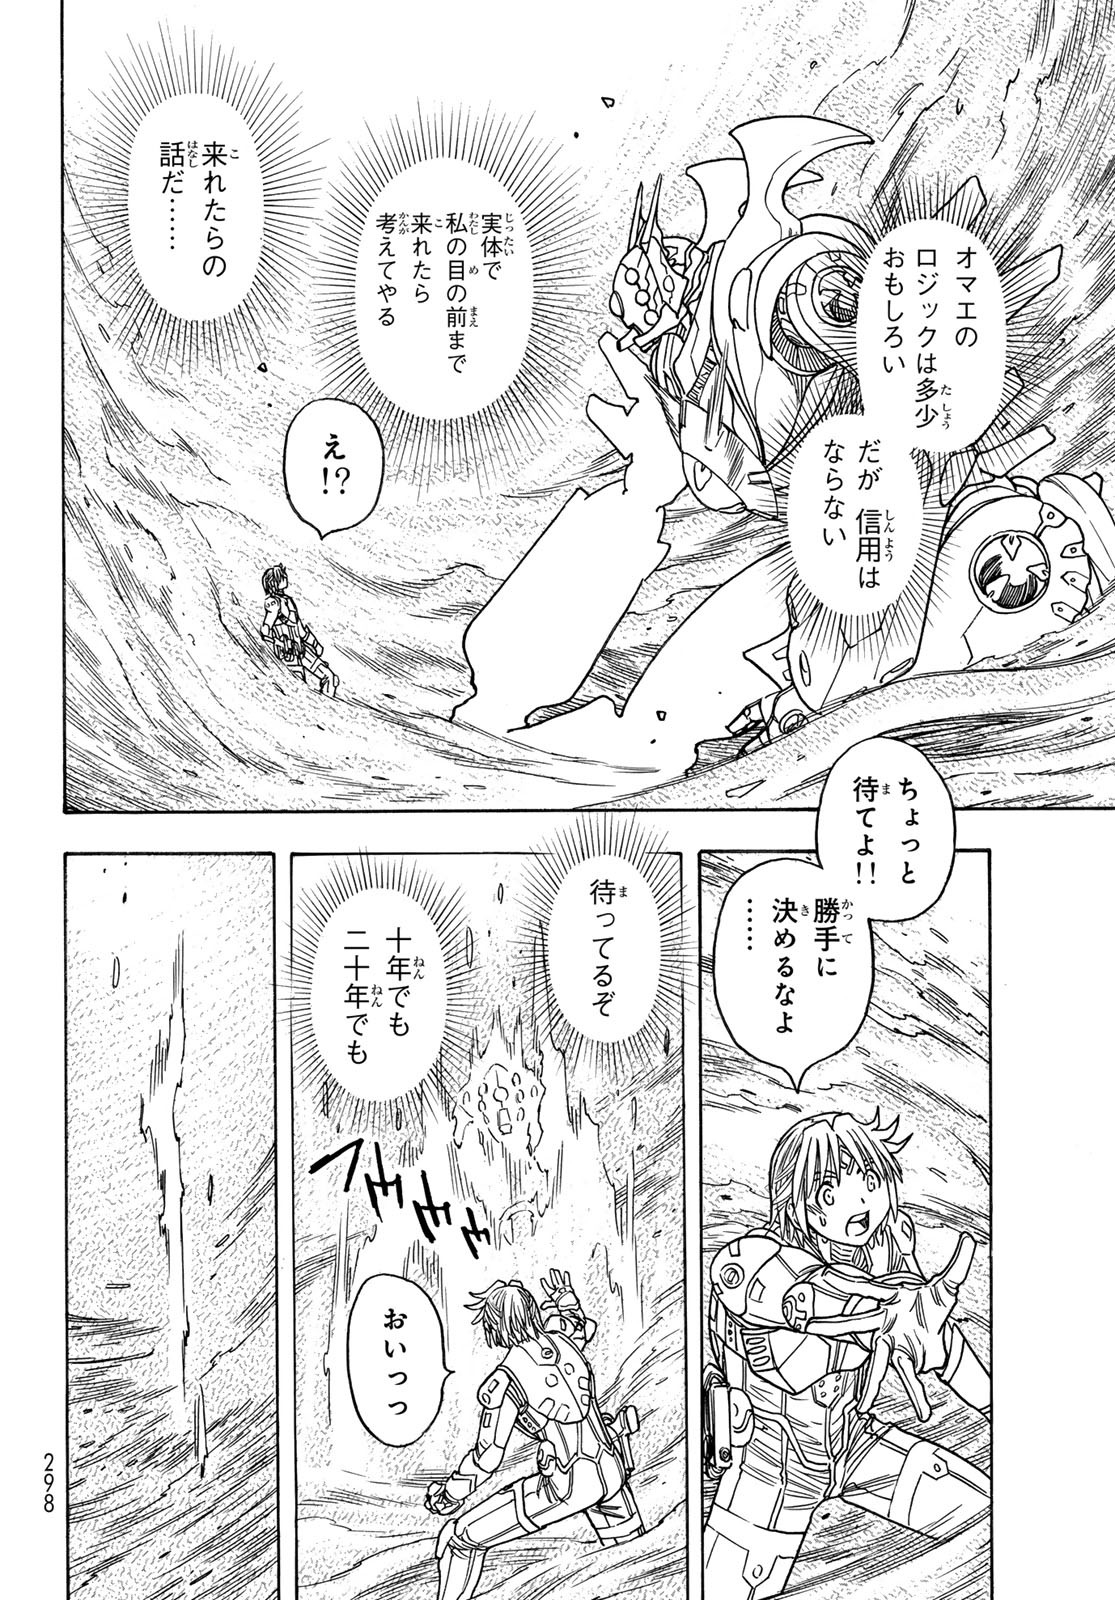 Mugou no Schnell Gear: Chikyuugai Kisouka AI - Chapter 51 - Page 14